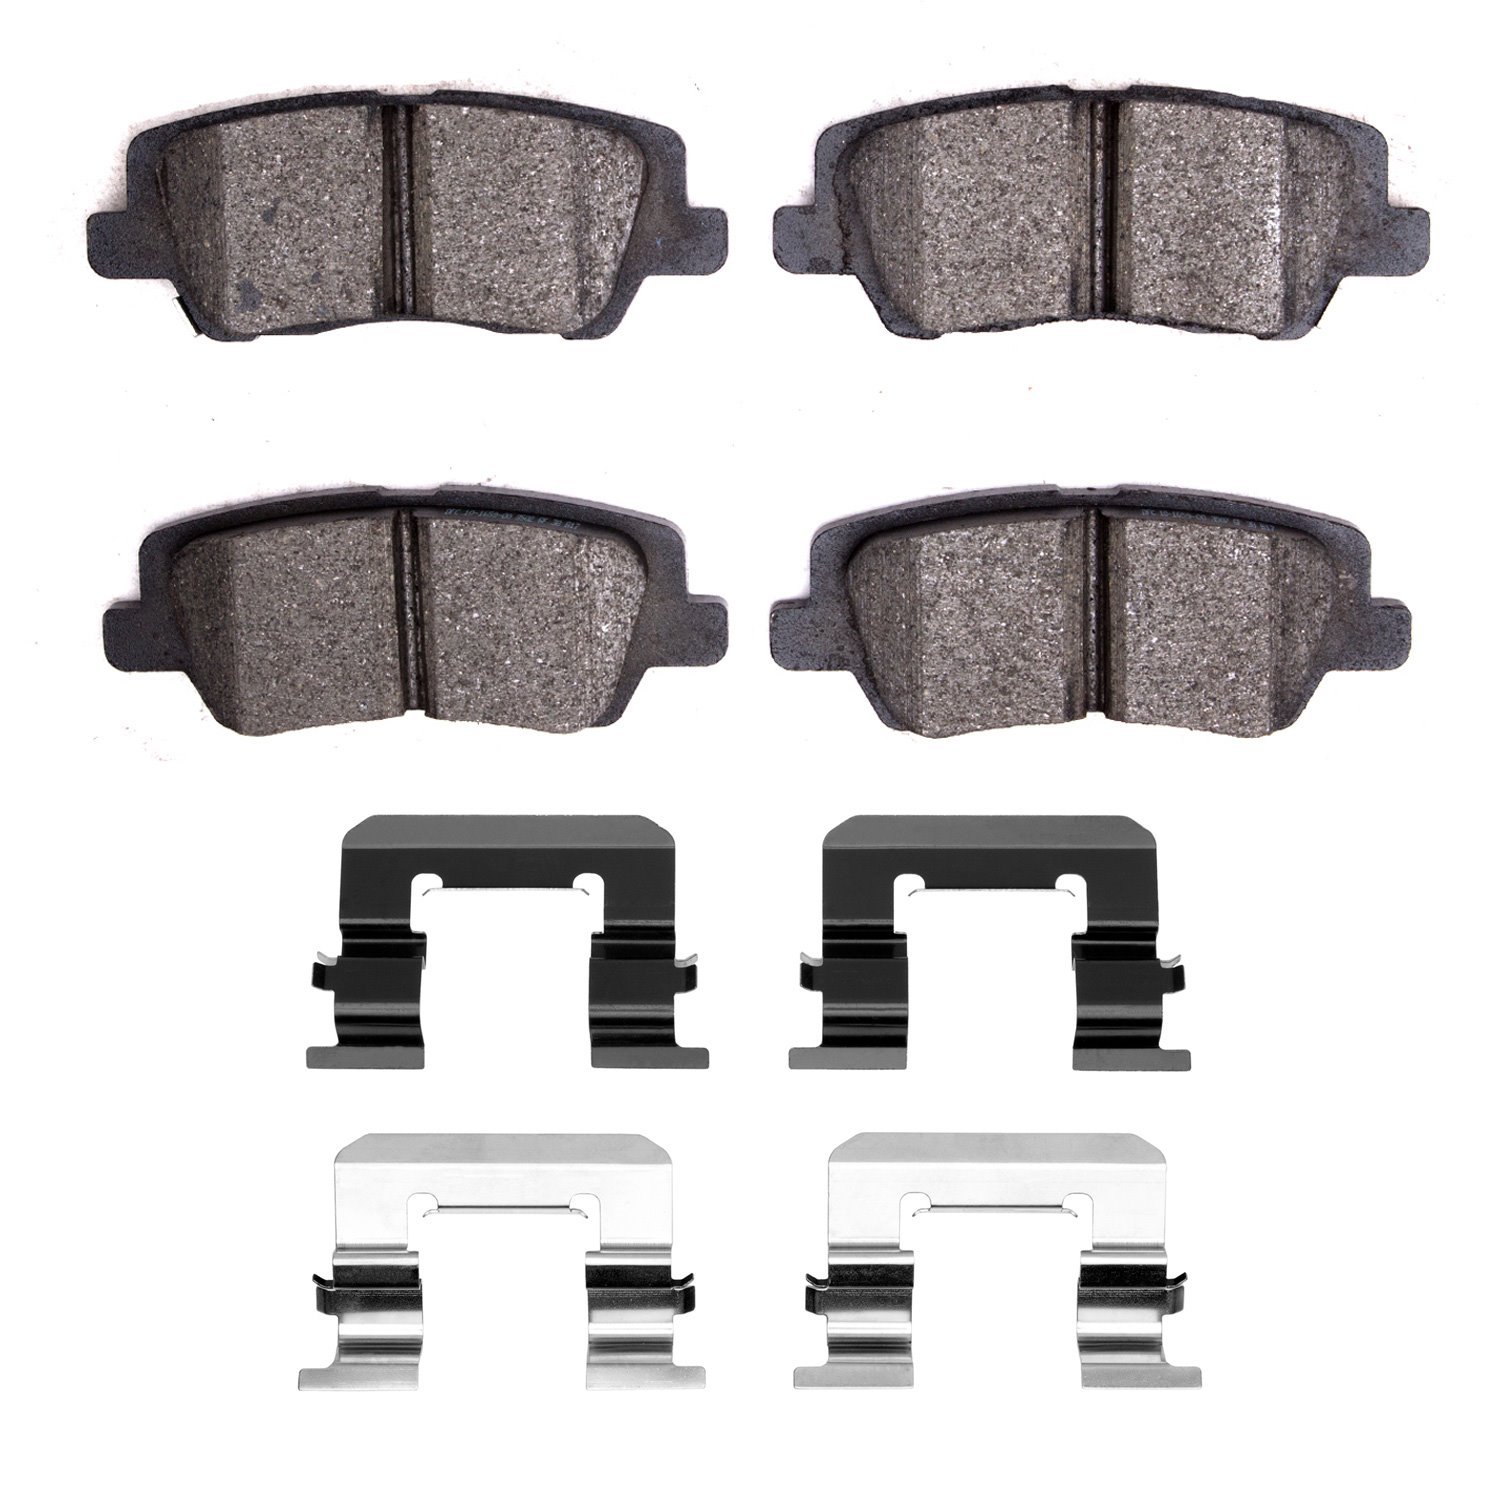 1600-1659-01 5000 Euro Ceramic Brake Pads & Hardware Kit, 2013-2019 GM, Position: Rear